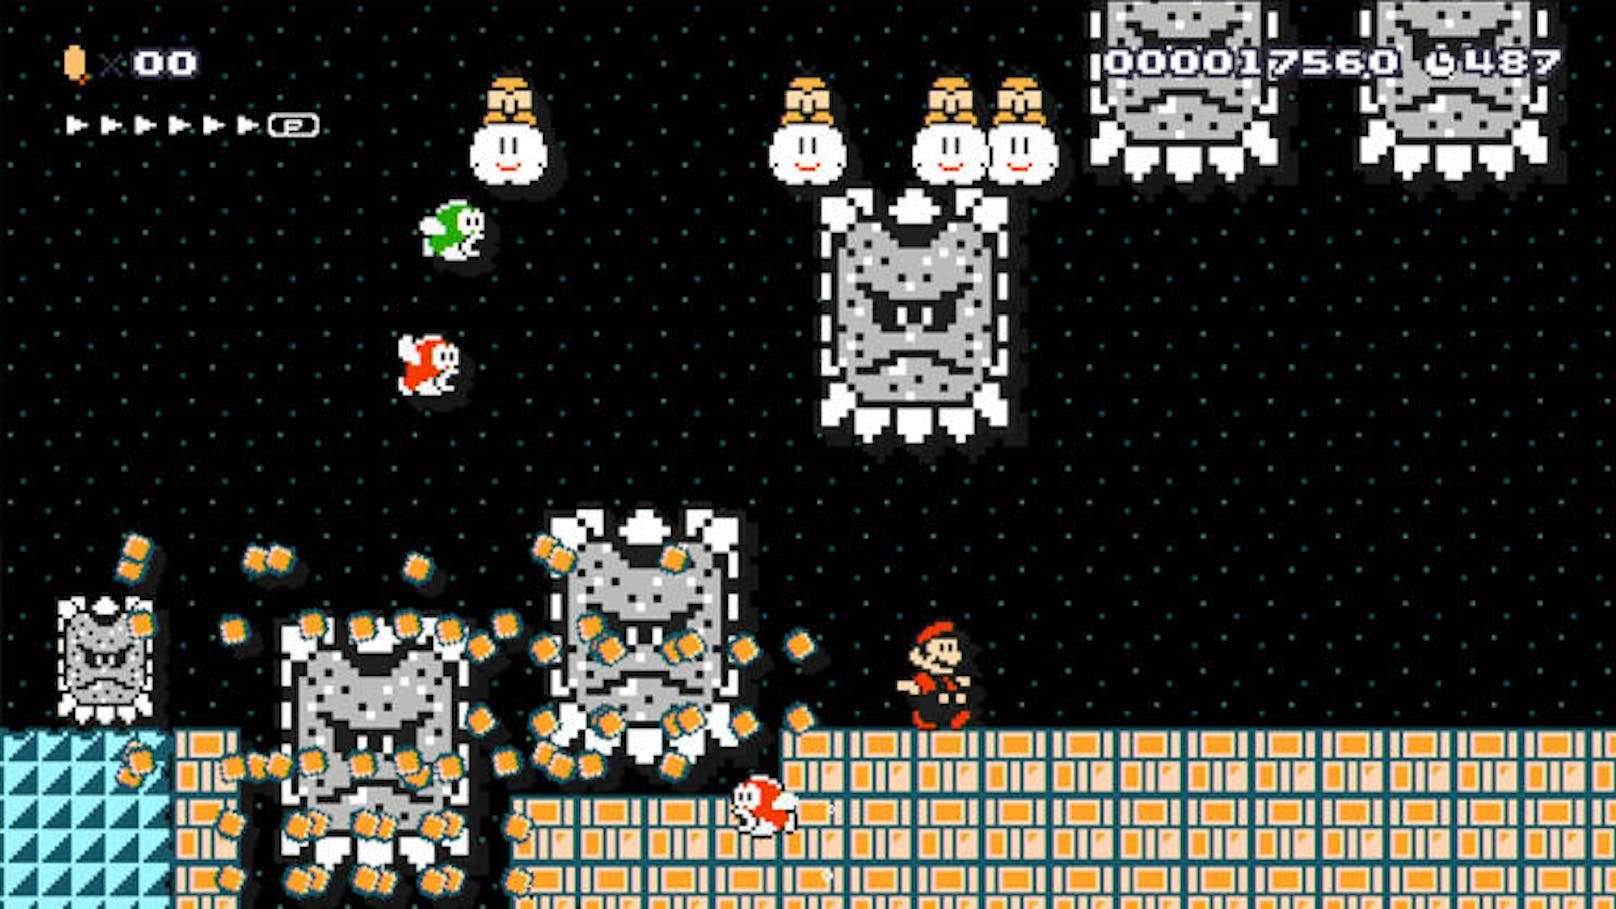 Der Suchtfaktor bei Super Mario Maker ist nämlich extrem hoch. 30 Jahre nach dem ersten Erscheinen des Klempners werden nun die damilgen Zocker schmunzeln müssen, wenn sie ihrerseits ihre Kinder vom Spielgerät trennen wollen.